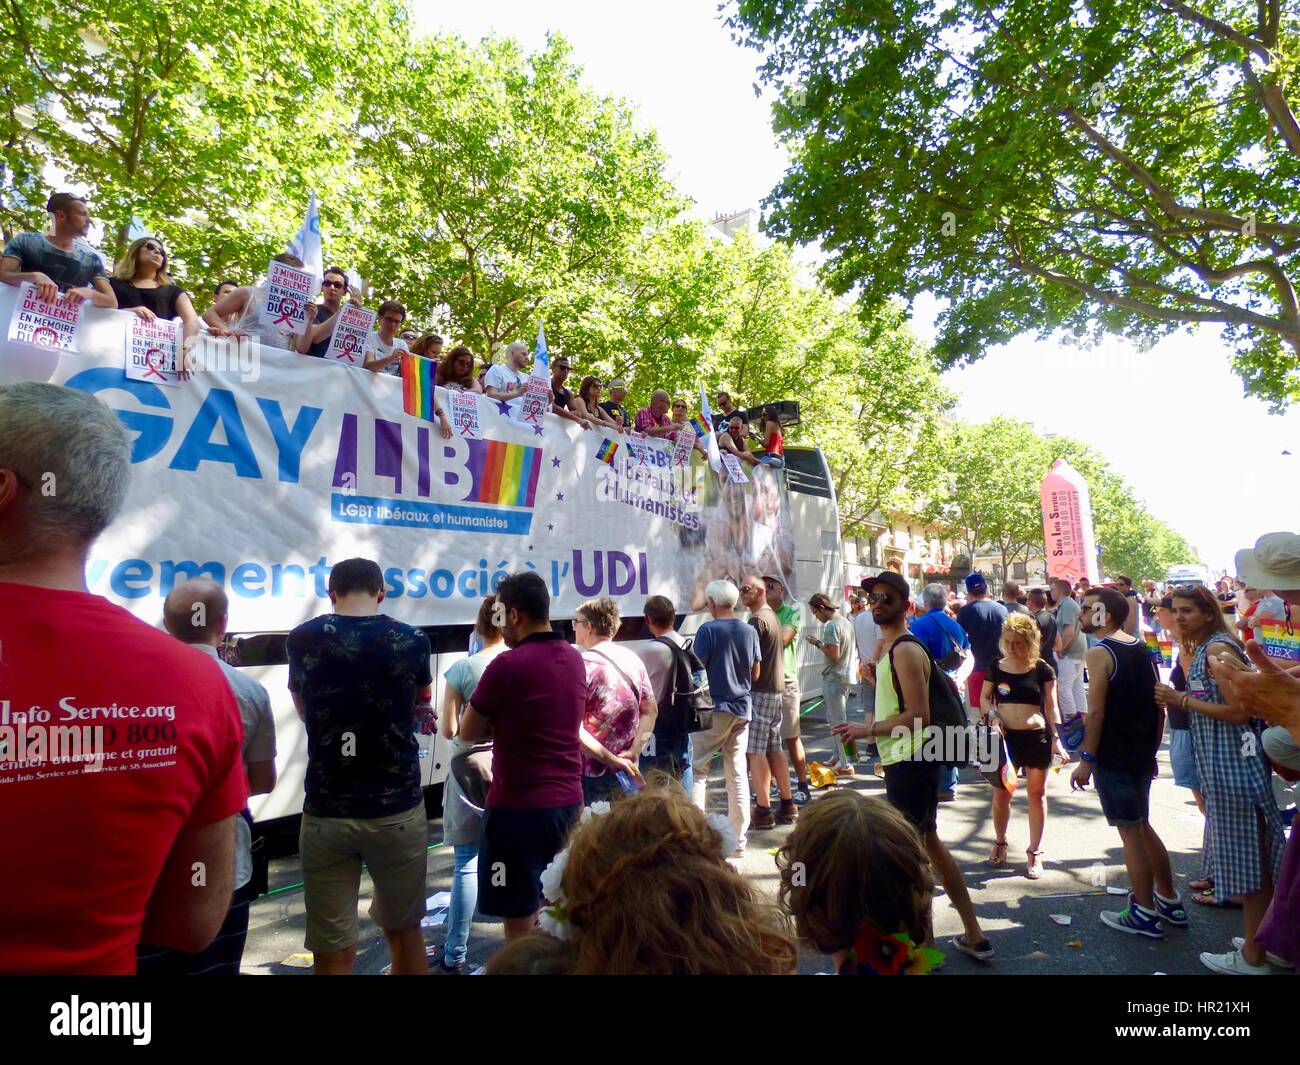 GAYLIB galleggiante, Parigi Pride Parade 2015. Marche des Fiertés. I partecipanti segni di attesa durante il momento di silenzio per coloro che sono morti di HIV/AIDS. Parigi. Foto Stock